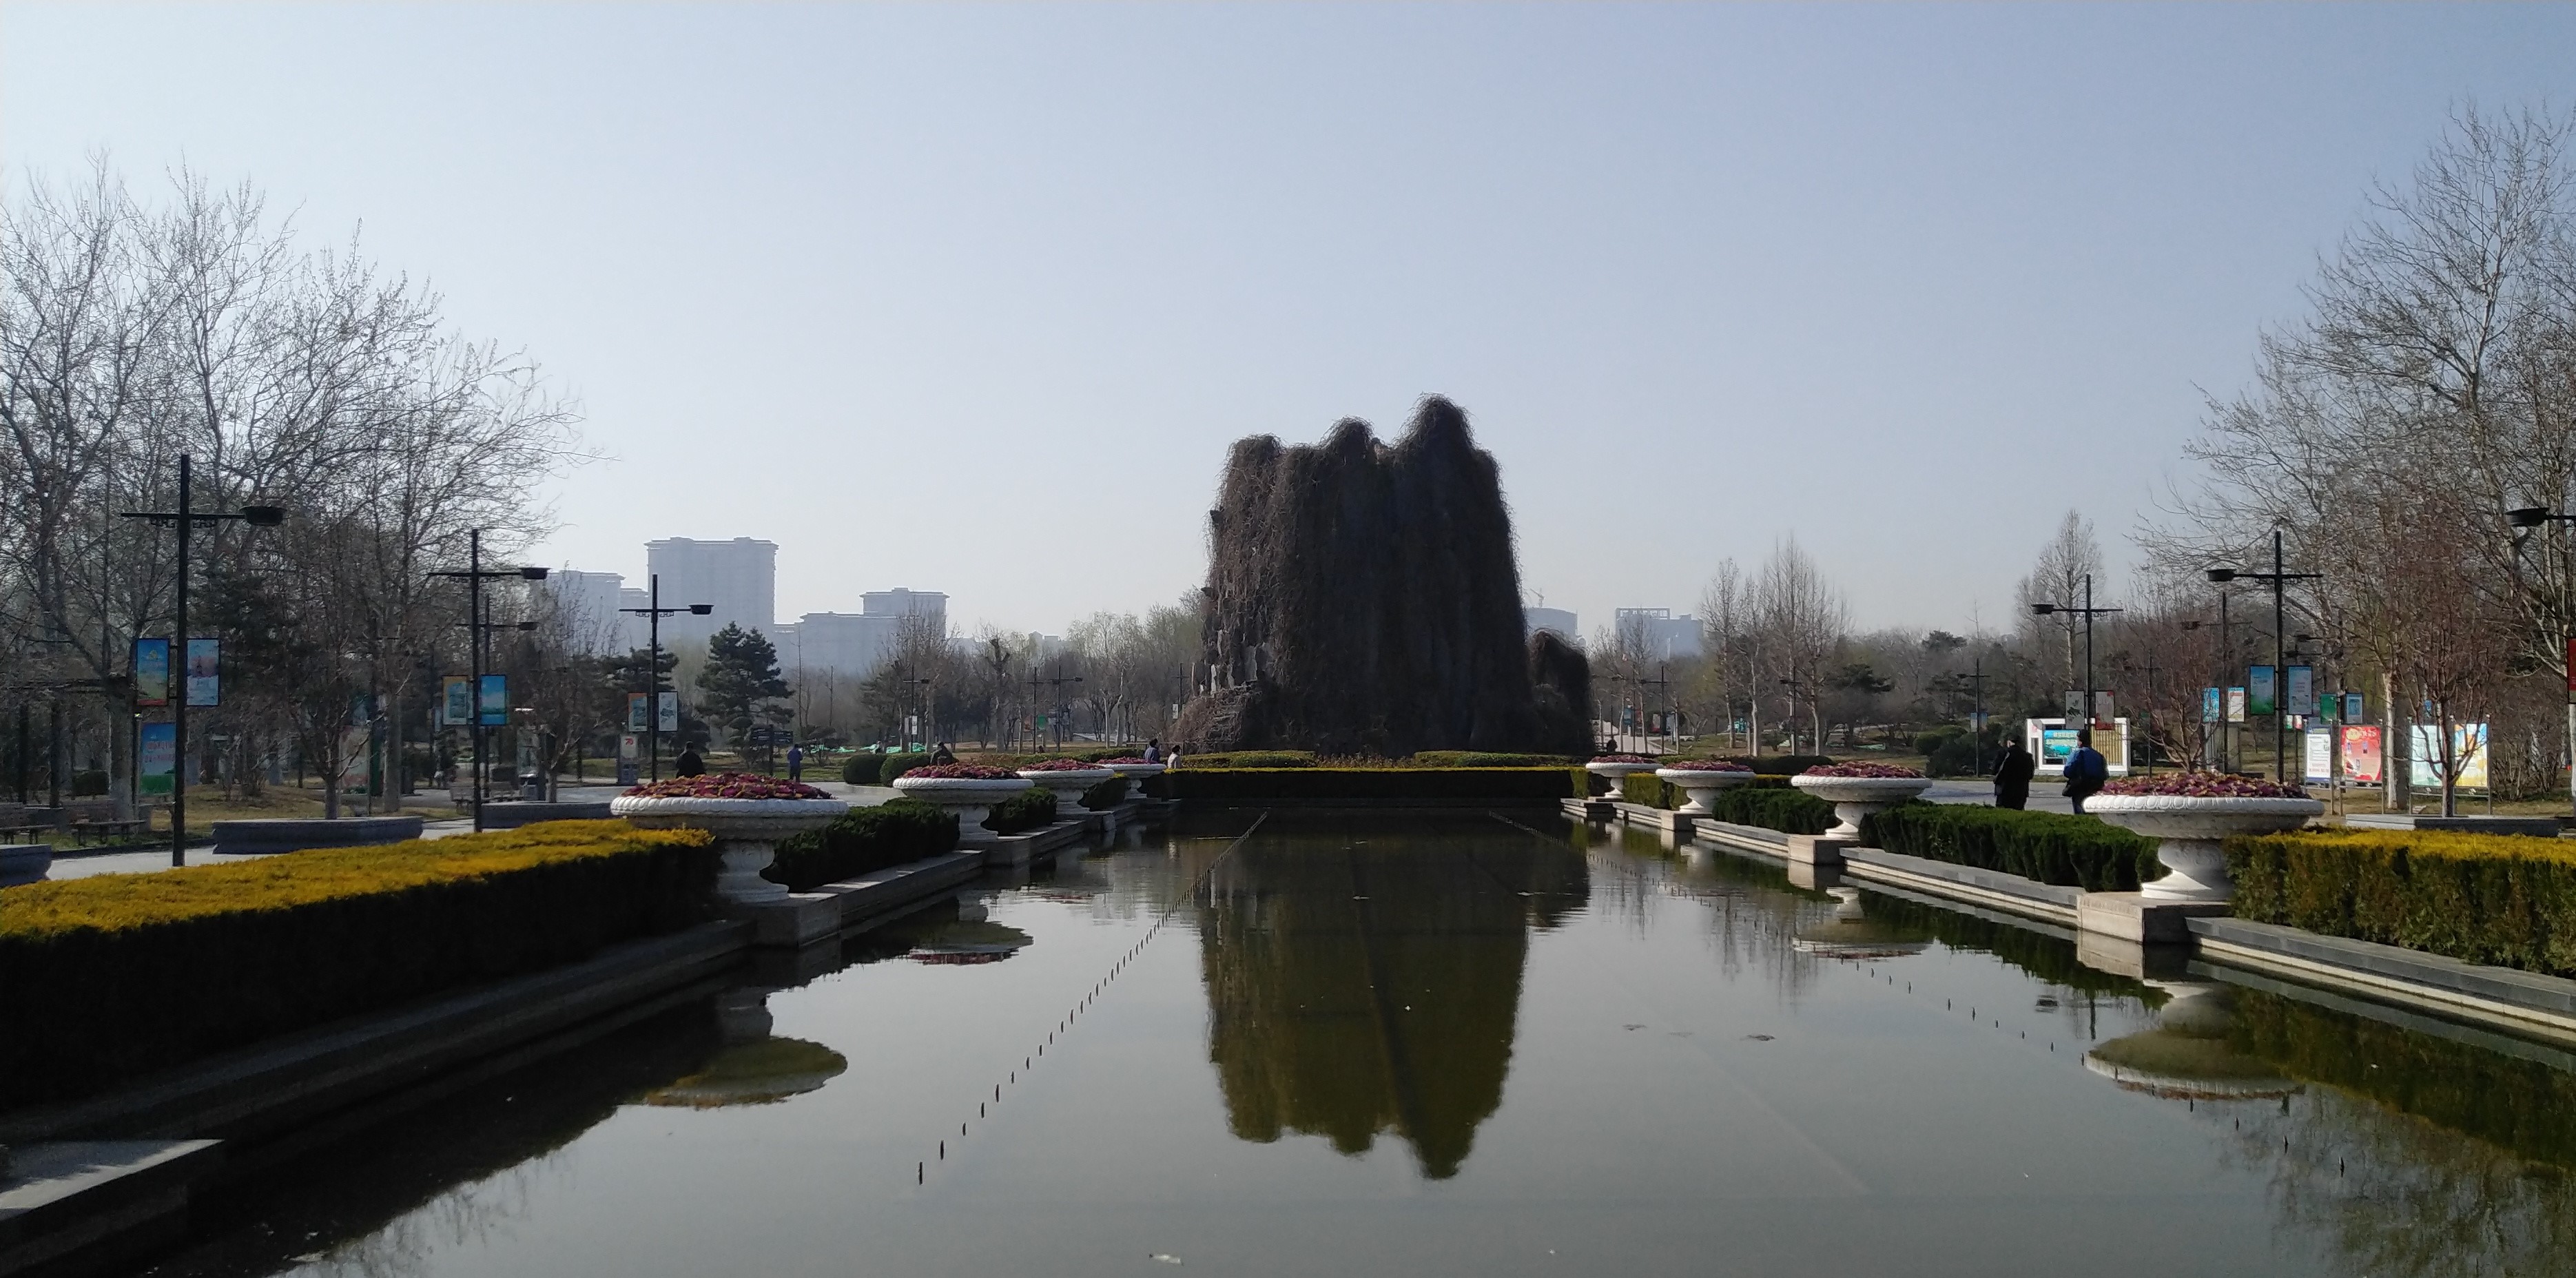 河北邯郸赵苑公园游记,风景组图之一